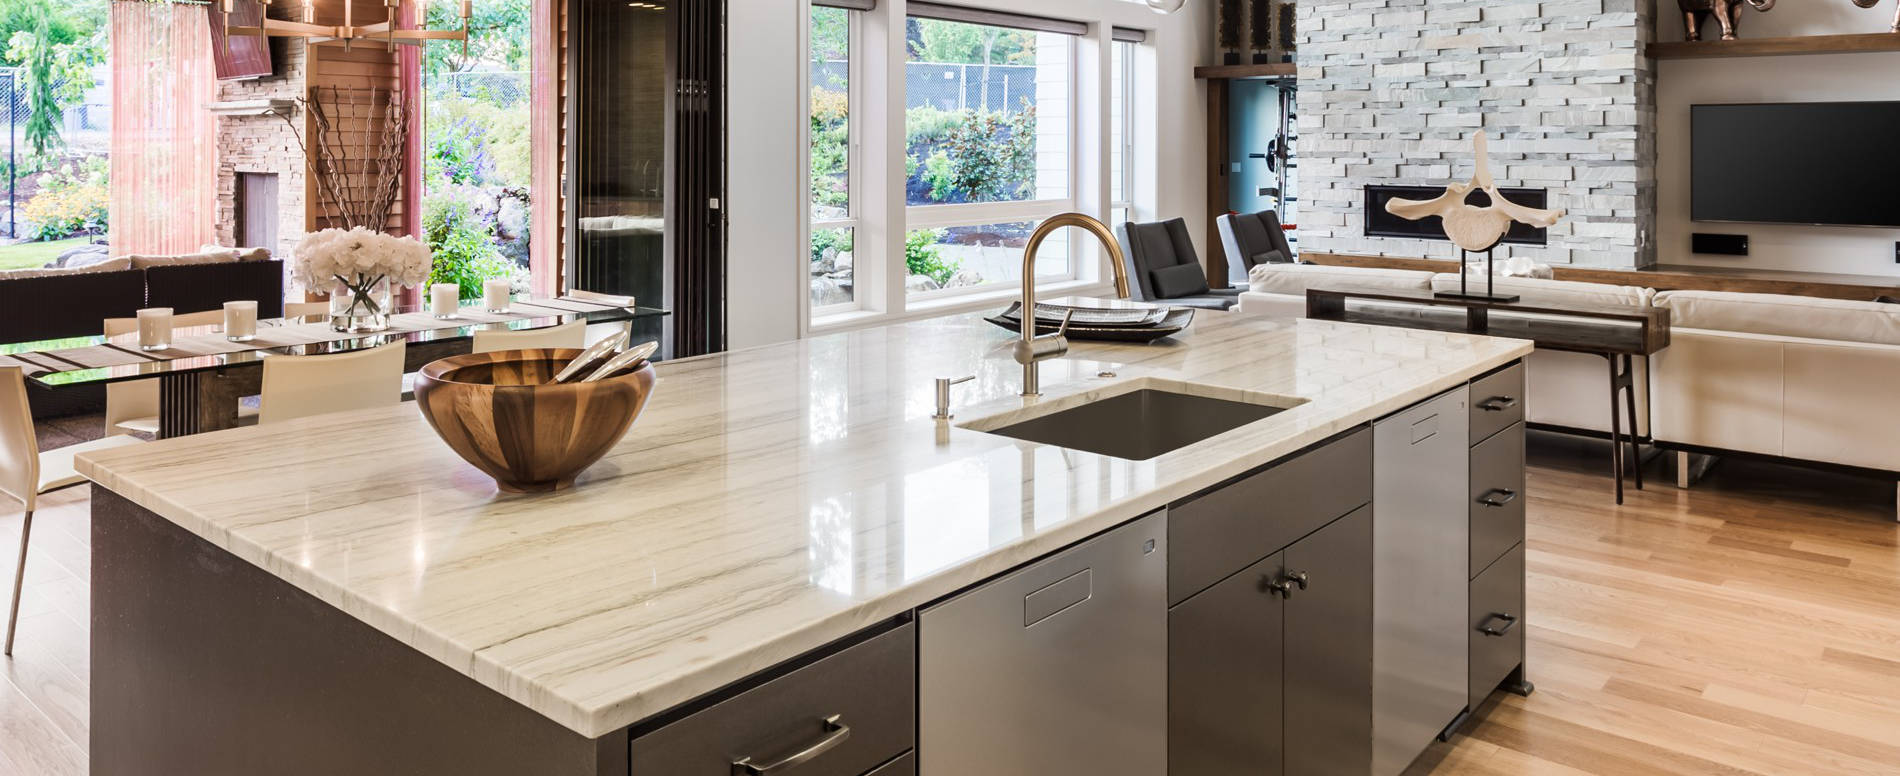 Marble Granite Kitchen Countertops Wholesale Miami